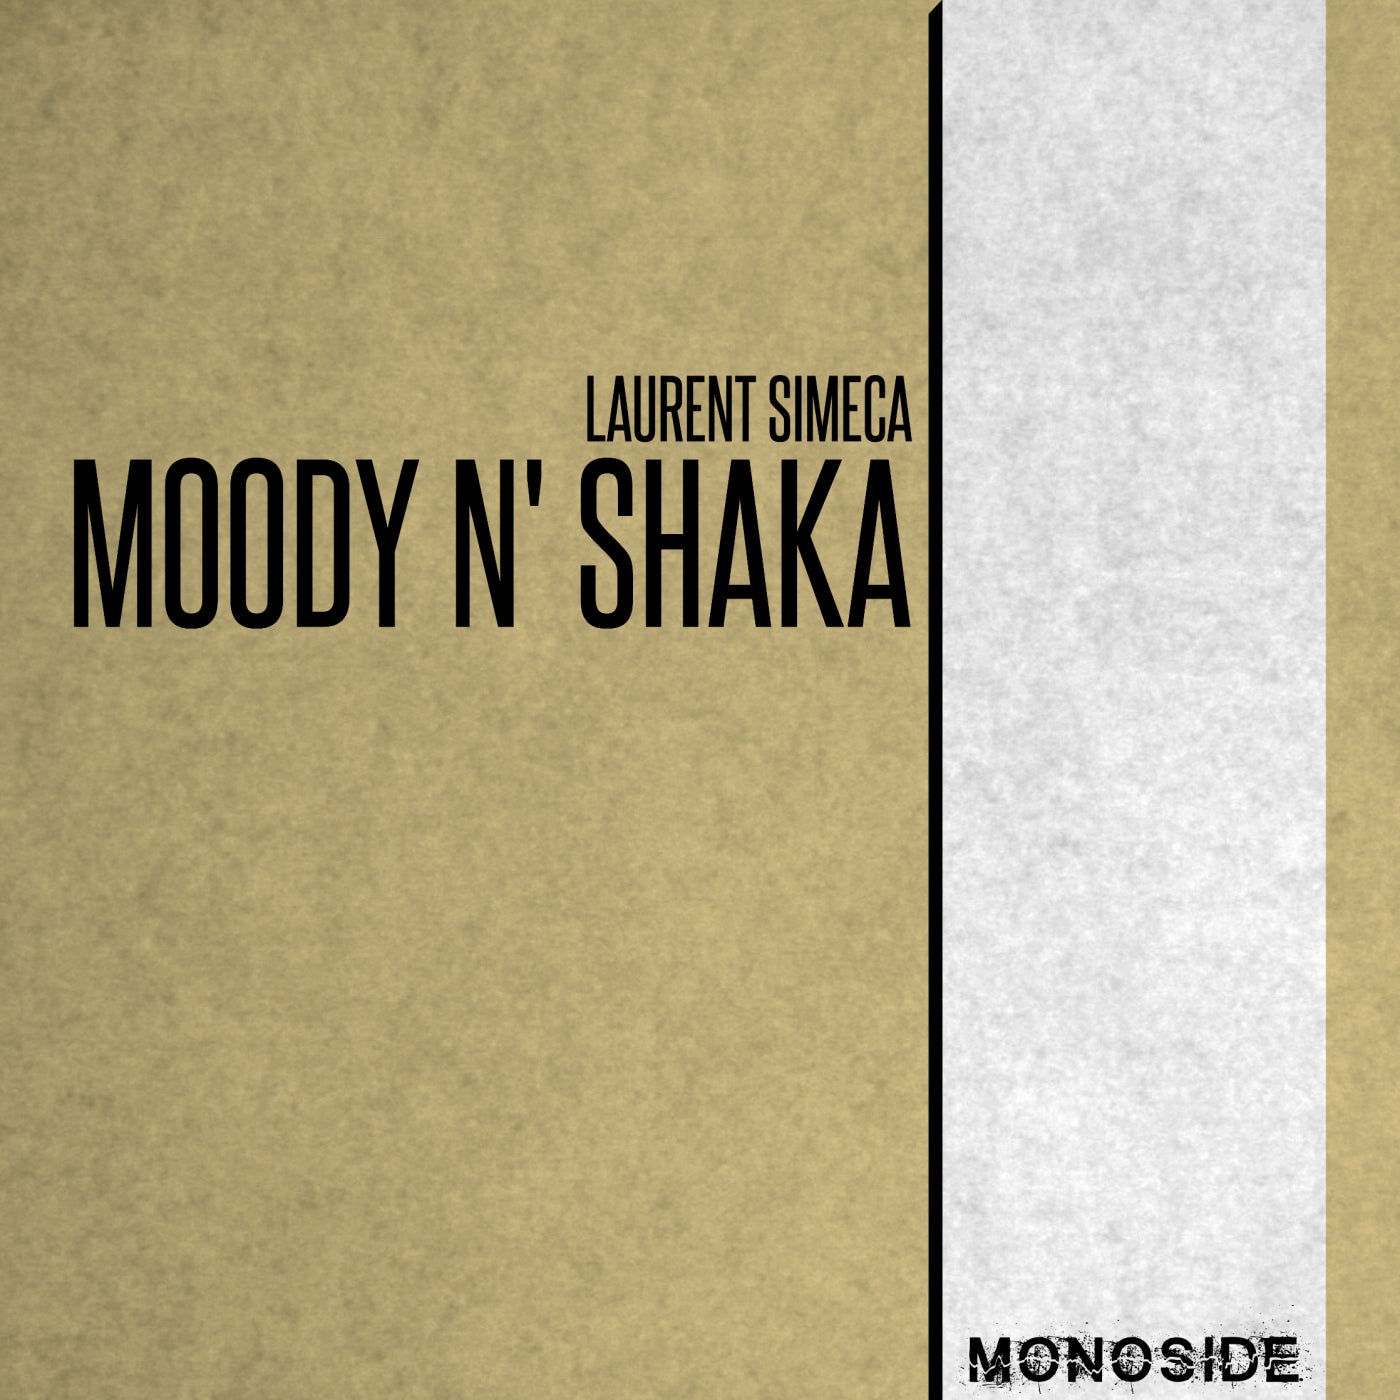 Moody N' Shaka